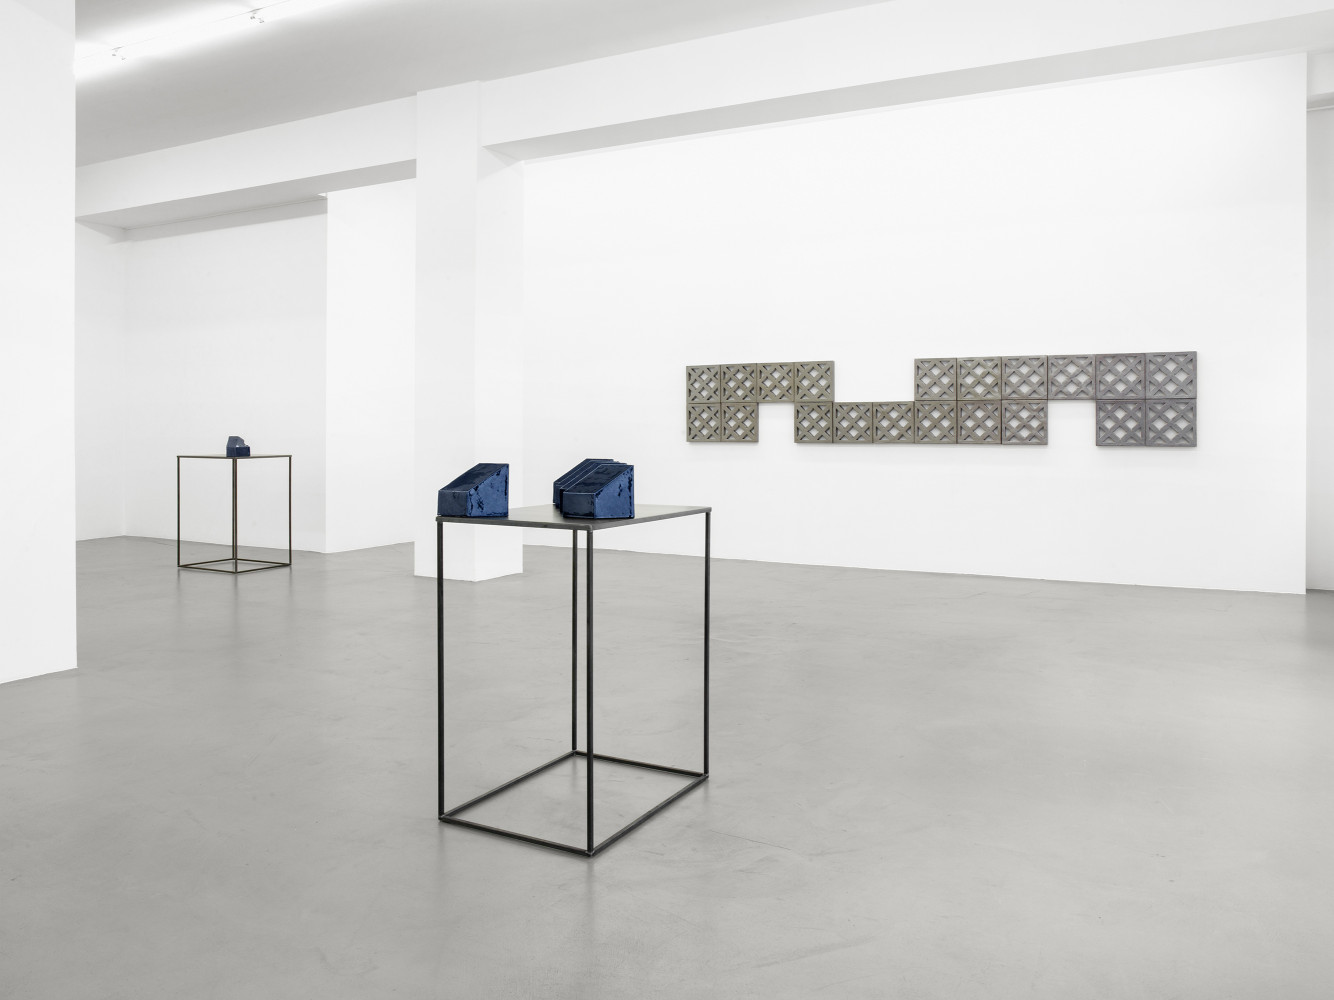 Bettina Pousttchi, ‘Ceramics’, Installation view, Buchmann Galerie, 2016